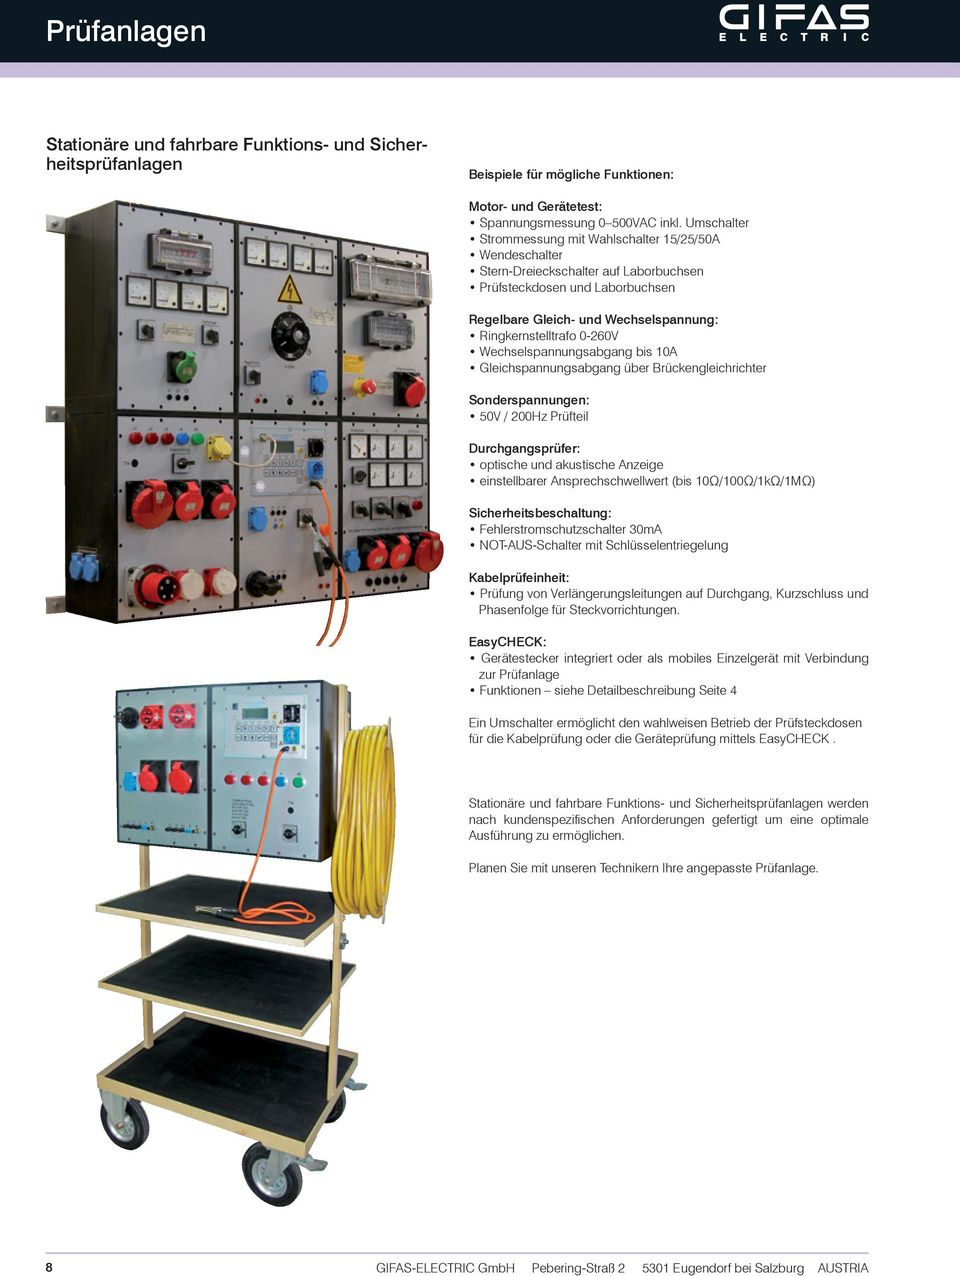 0-260V Wechselspannungsabgang bis 10A Gleichspannungsabgang über Brückengleichrichter Sonderspannungen: 50V / 200Hz Prüfteil Durchgangsprüfer: optische und akustische Anzeige einstellbarer